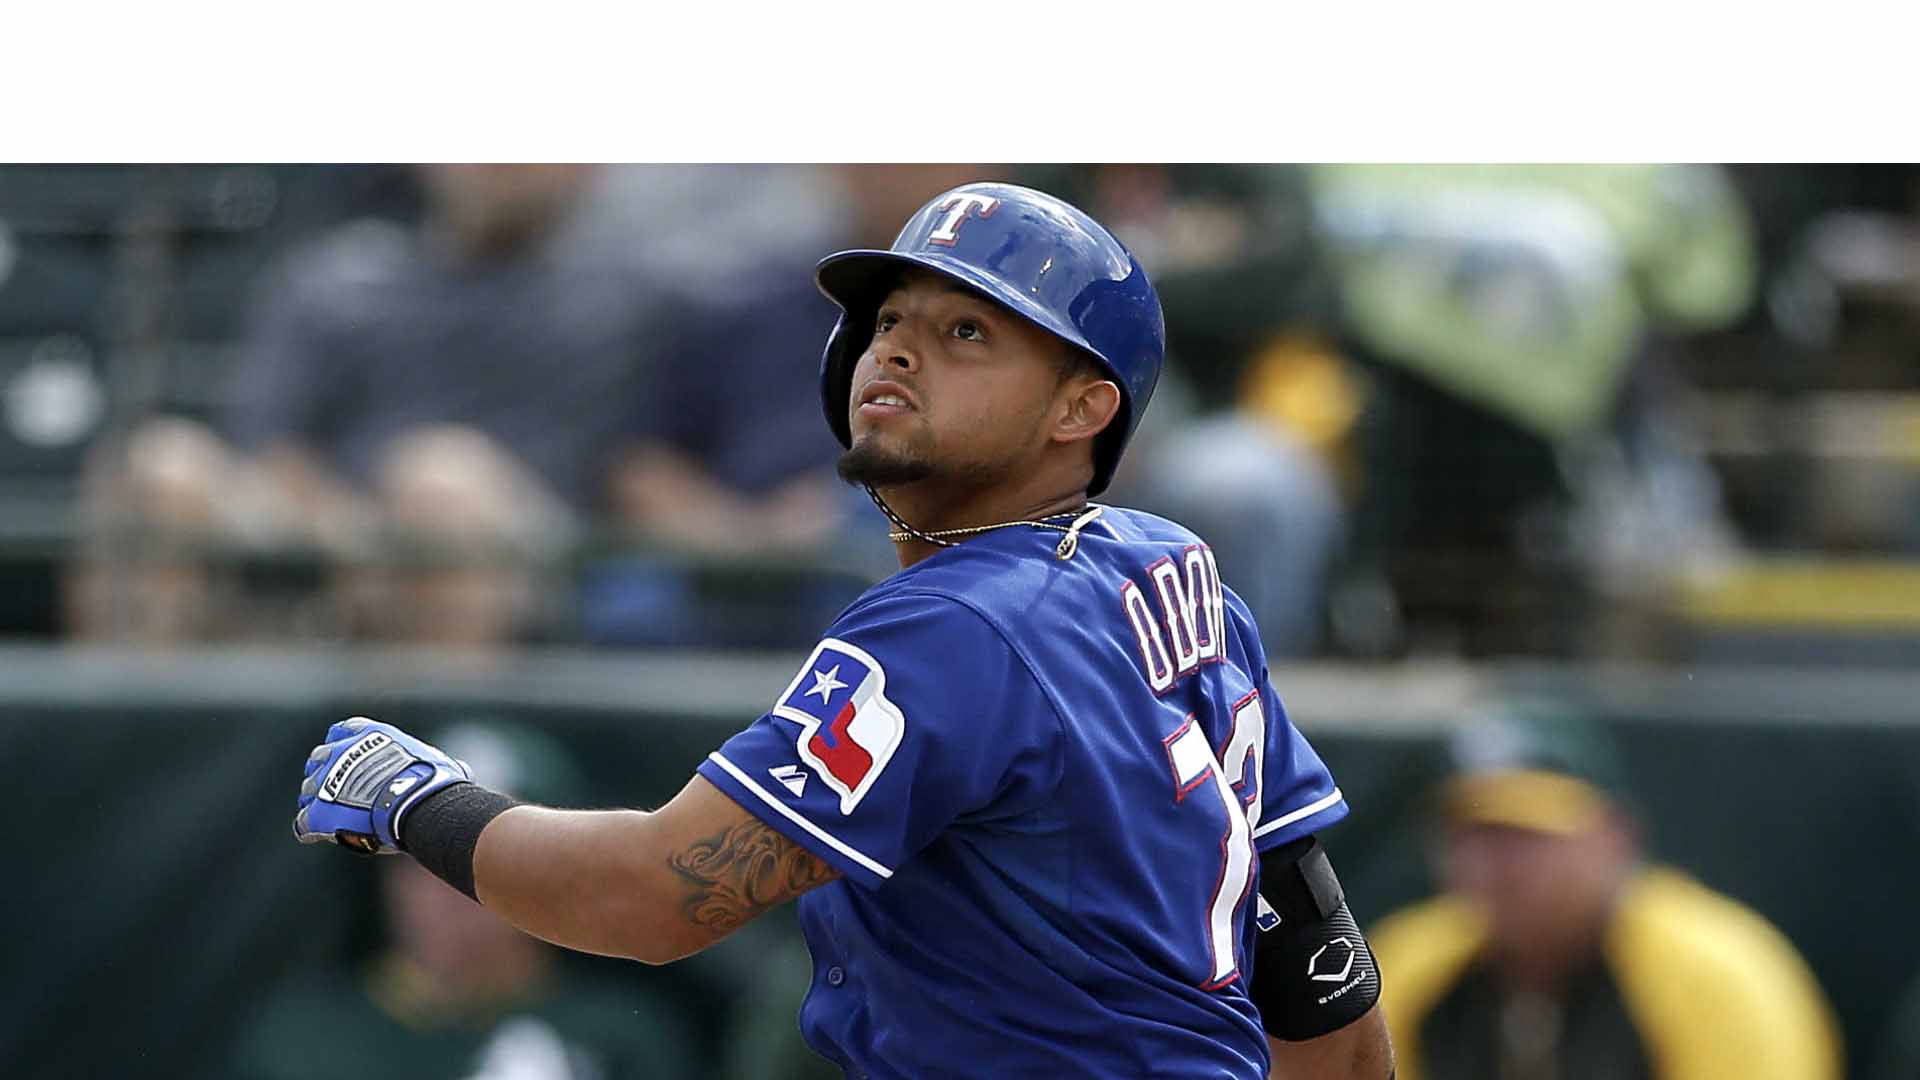 El zuliano de los Rangers de Texas superó el registro de más cuadrangulares para un segunda base que se mantuvo por 17 años